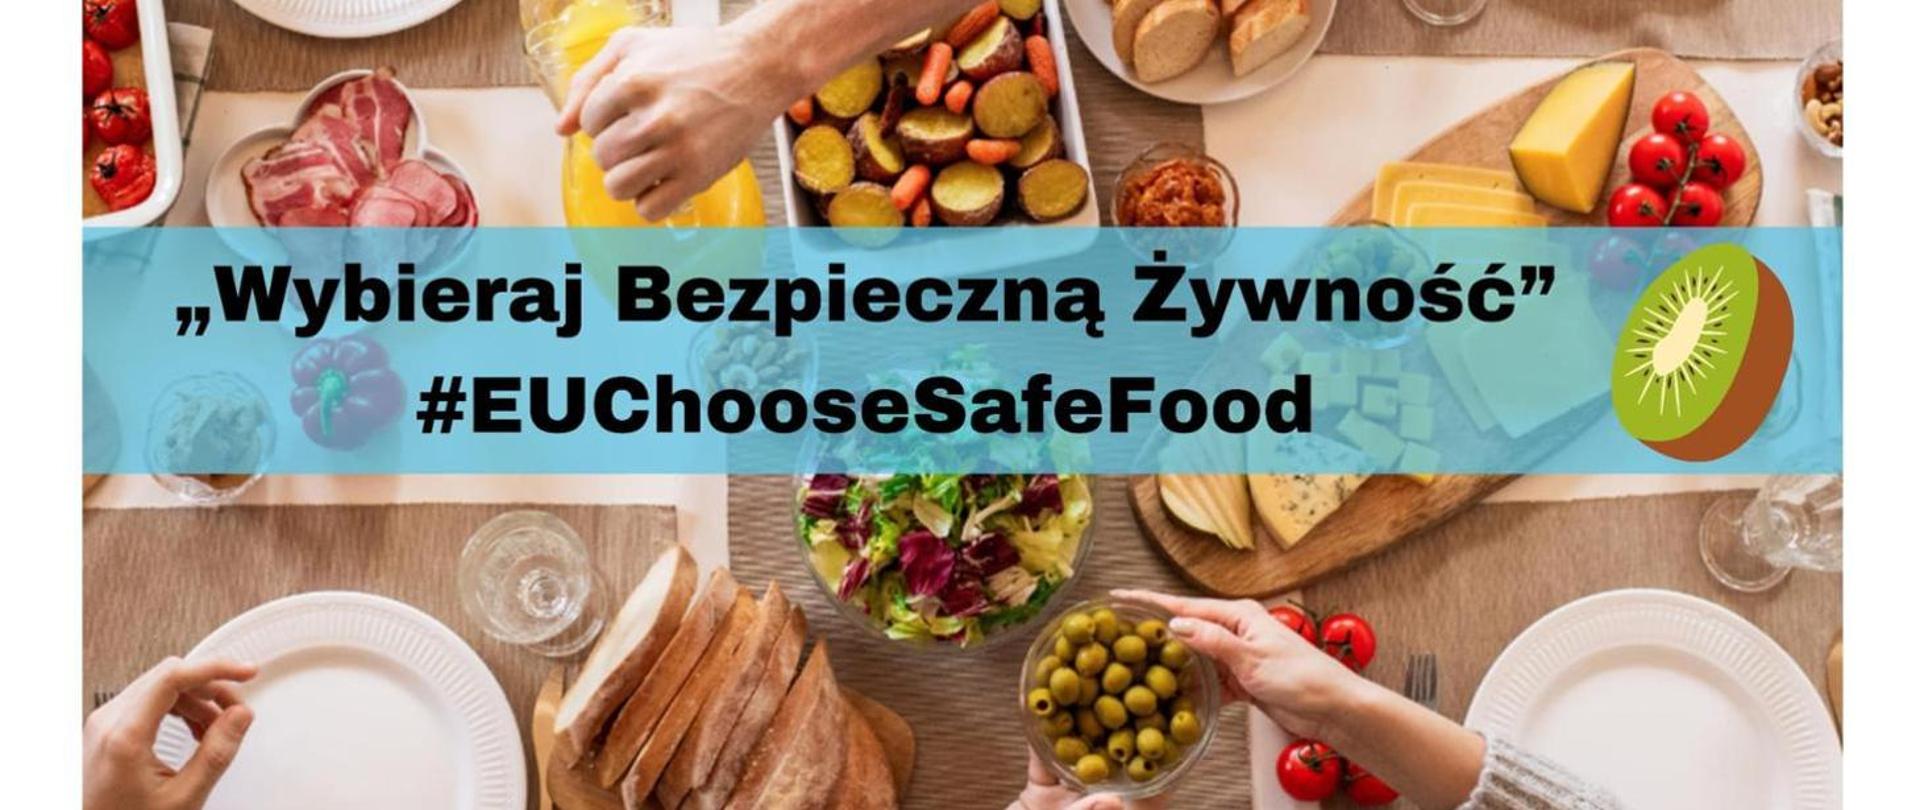 Napis: "Wybieraj bezpieczną żywność" EuChooseSafeFood na tle zdrowej żywności na talerzach